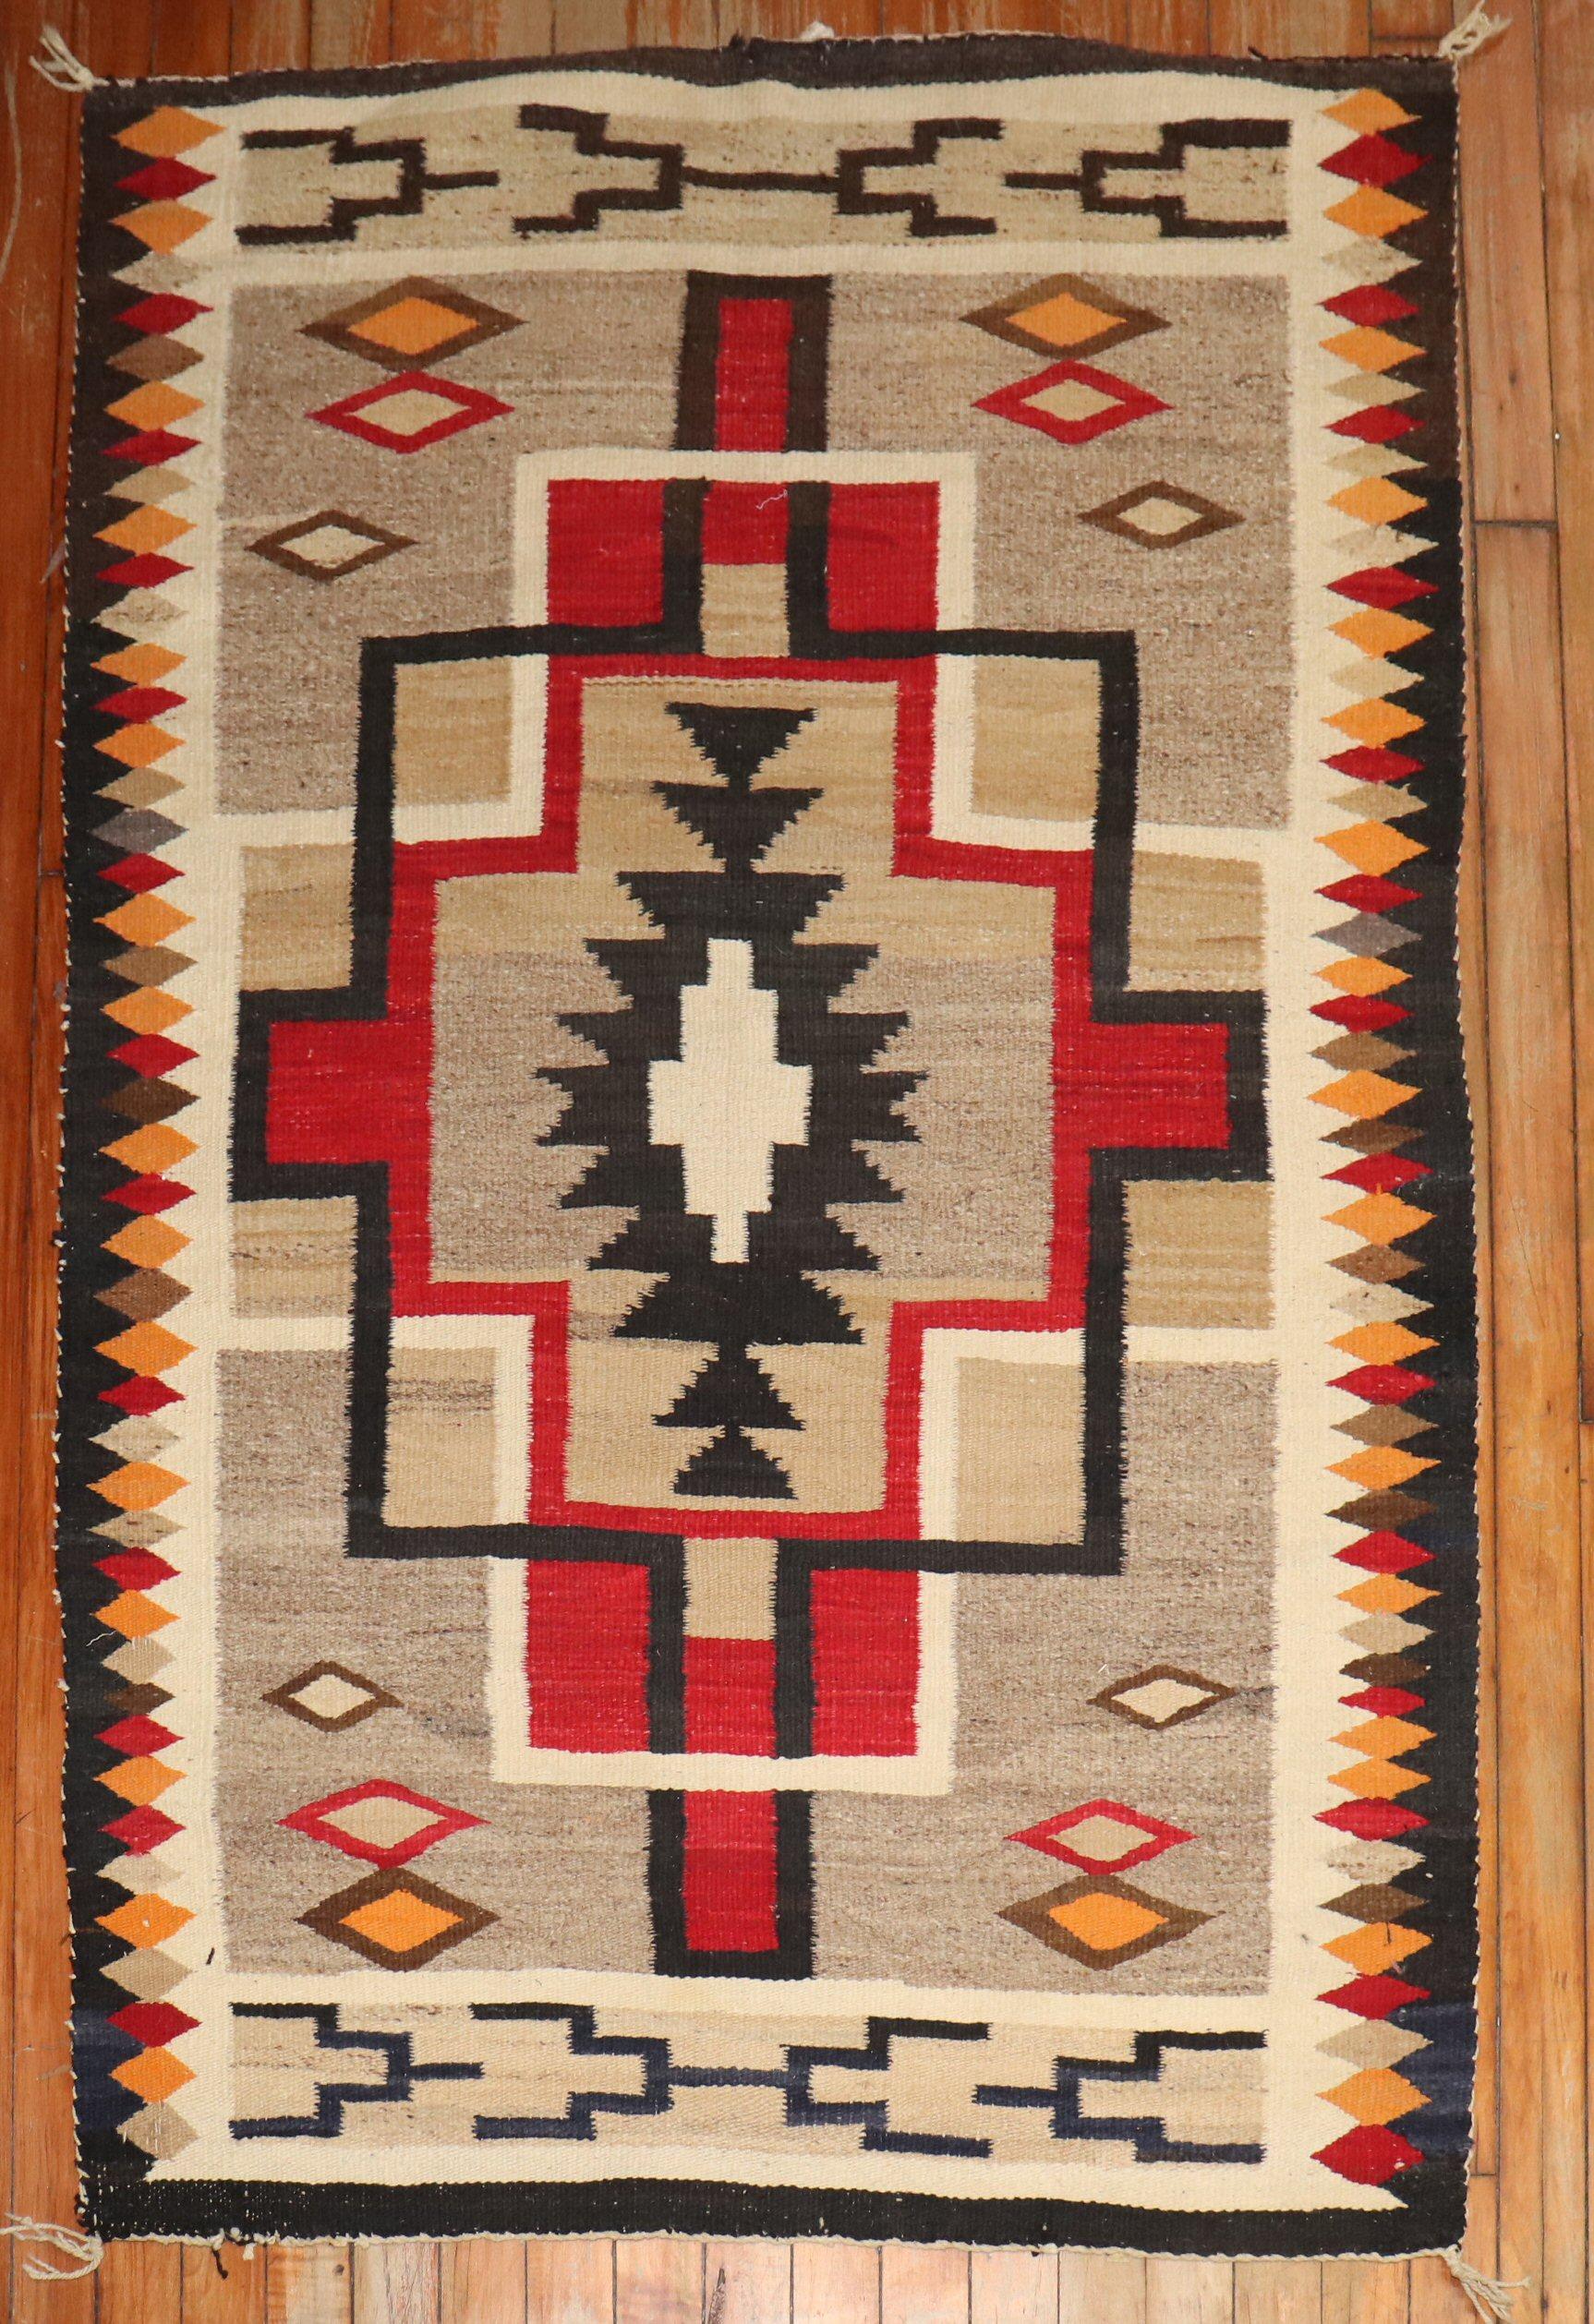 Tapis Navajo américain du XXe siècle, très décoratif, avec un motif tribal géométrique.  

Mesures : 3'2'' x 4'10''.